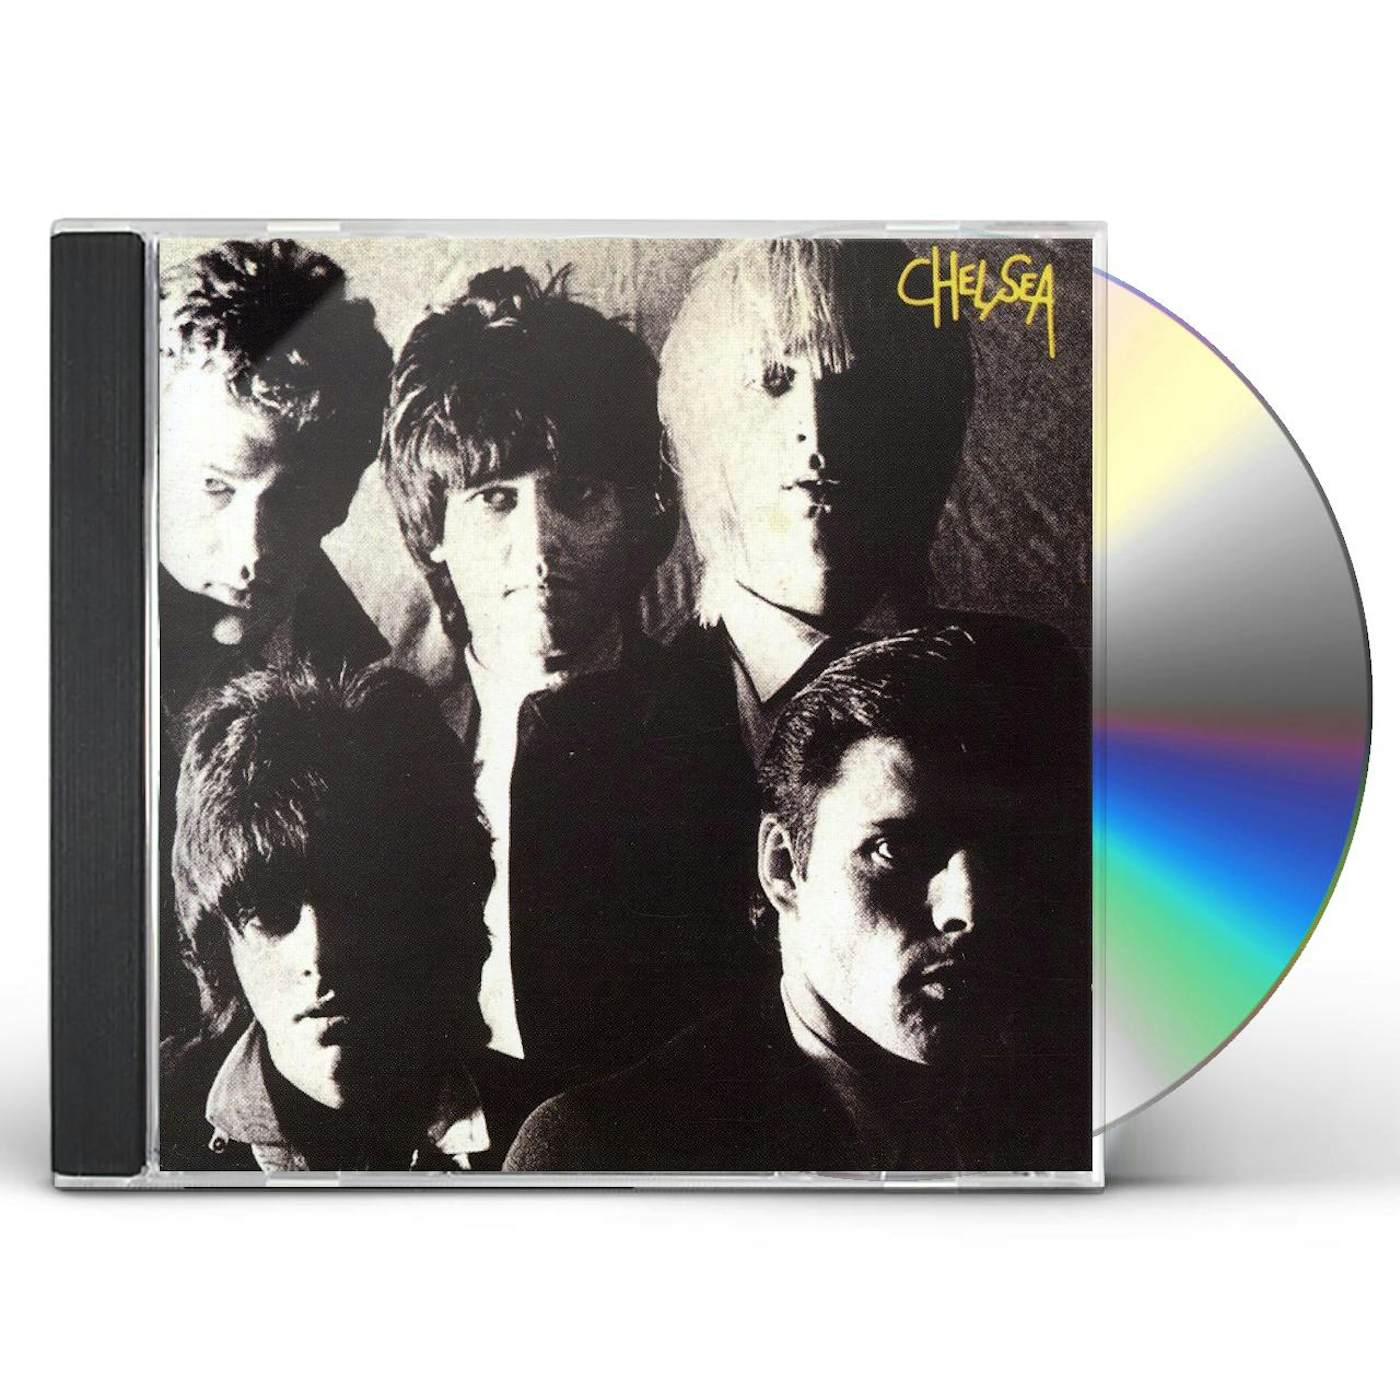 CHELSEA CD